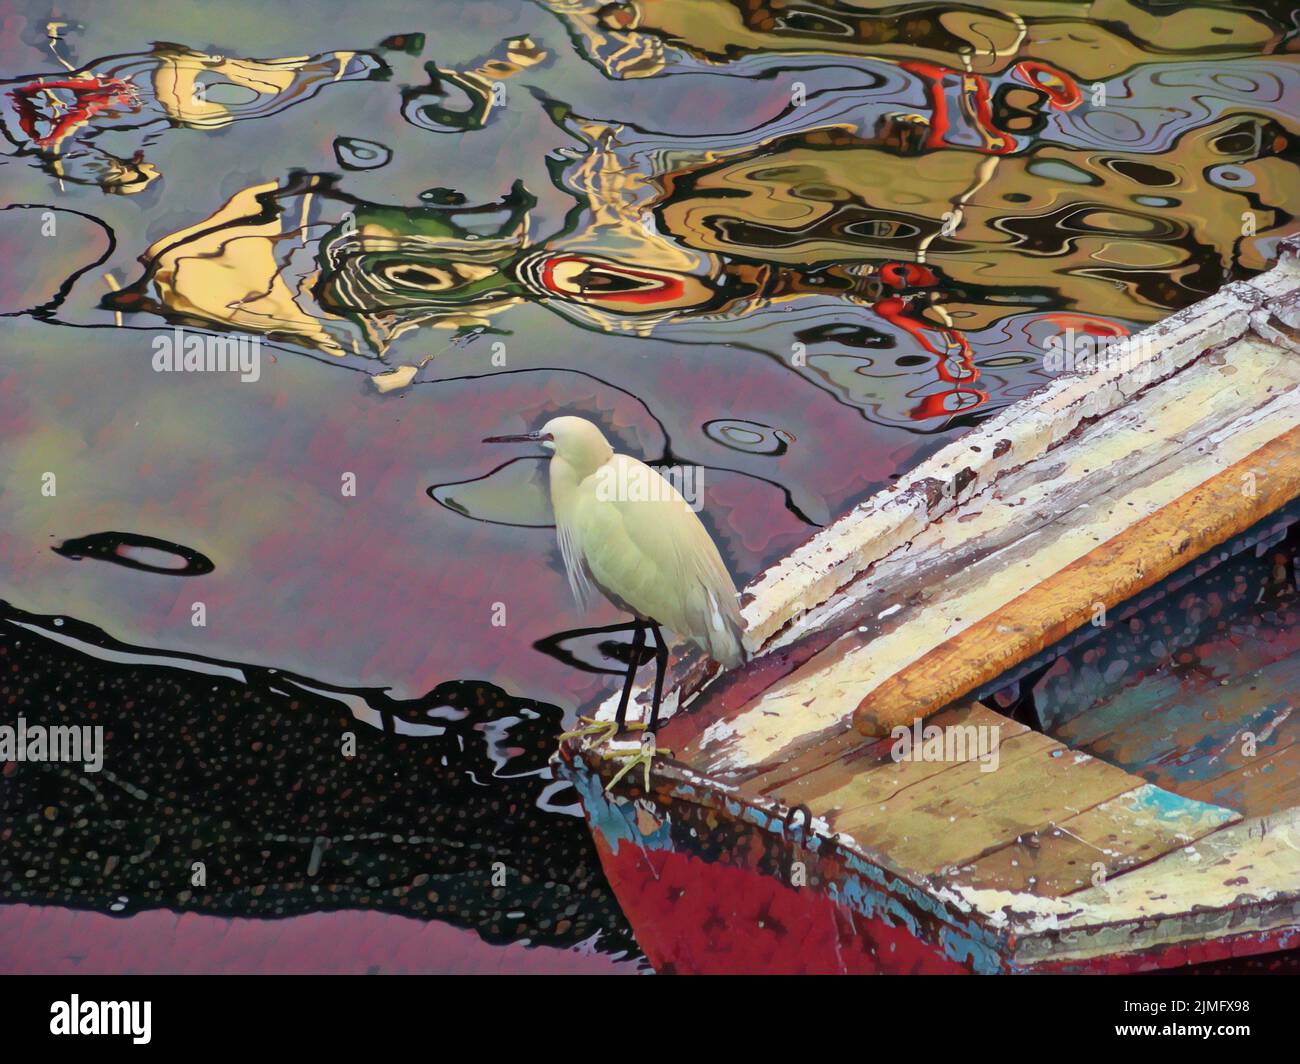 Ein Vogel mit weißem Gefieder steht auf einer Reihe mit abstrakten Formen in Farben, die sich im Wasser darunter widerspiegeln. Foto bearbeitet, um wie eine Illustration auszusehen. Stockfoto